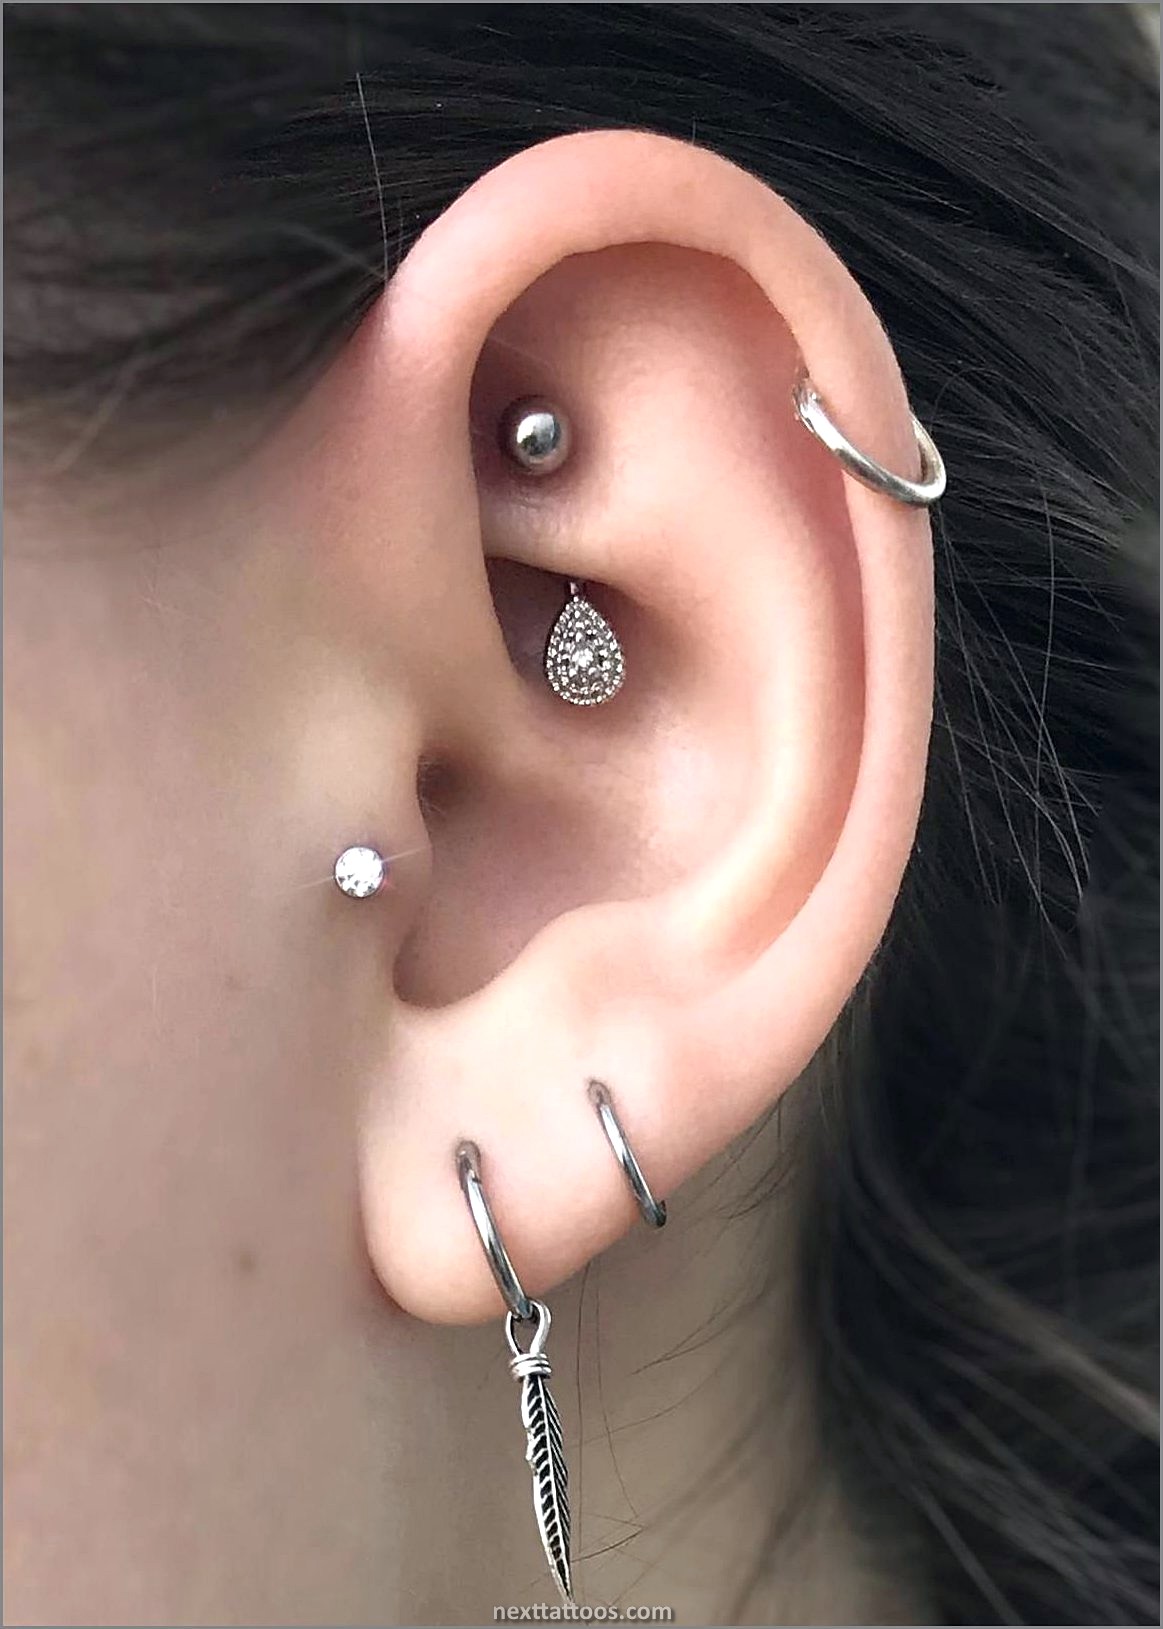 Double Ear Piercing Ideas